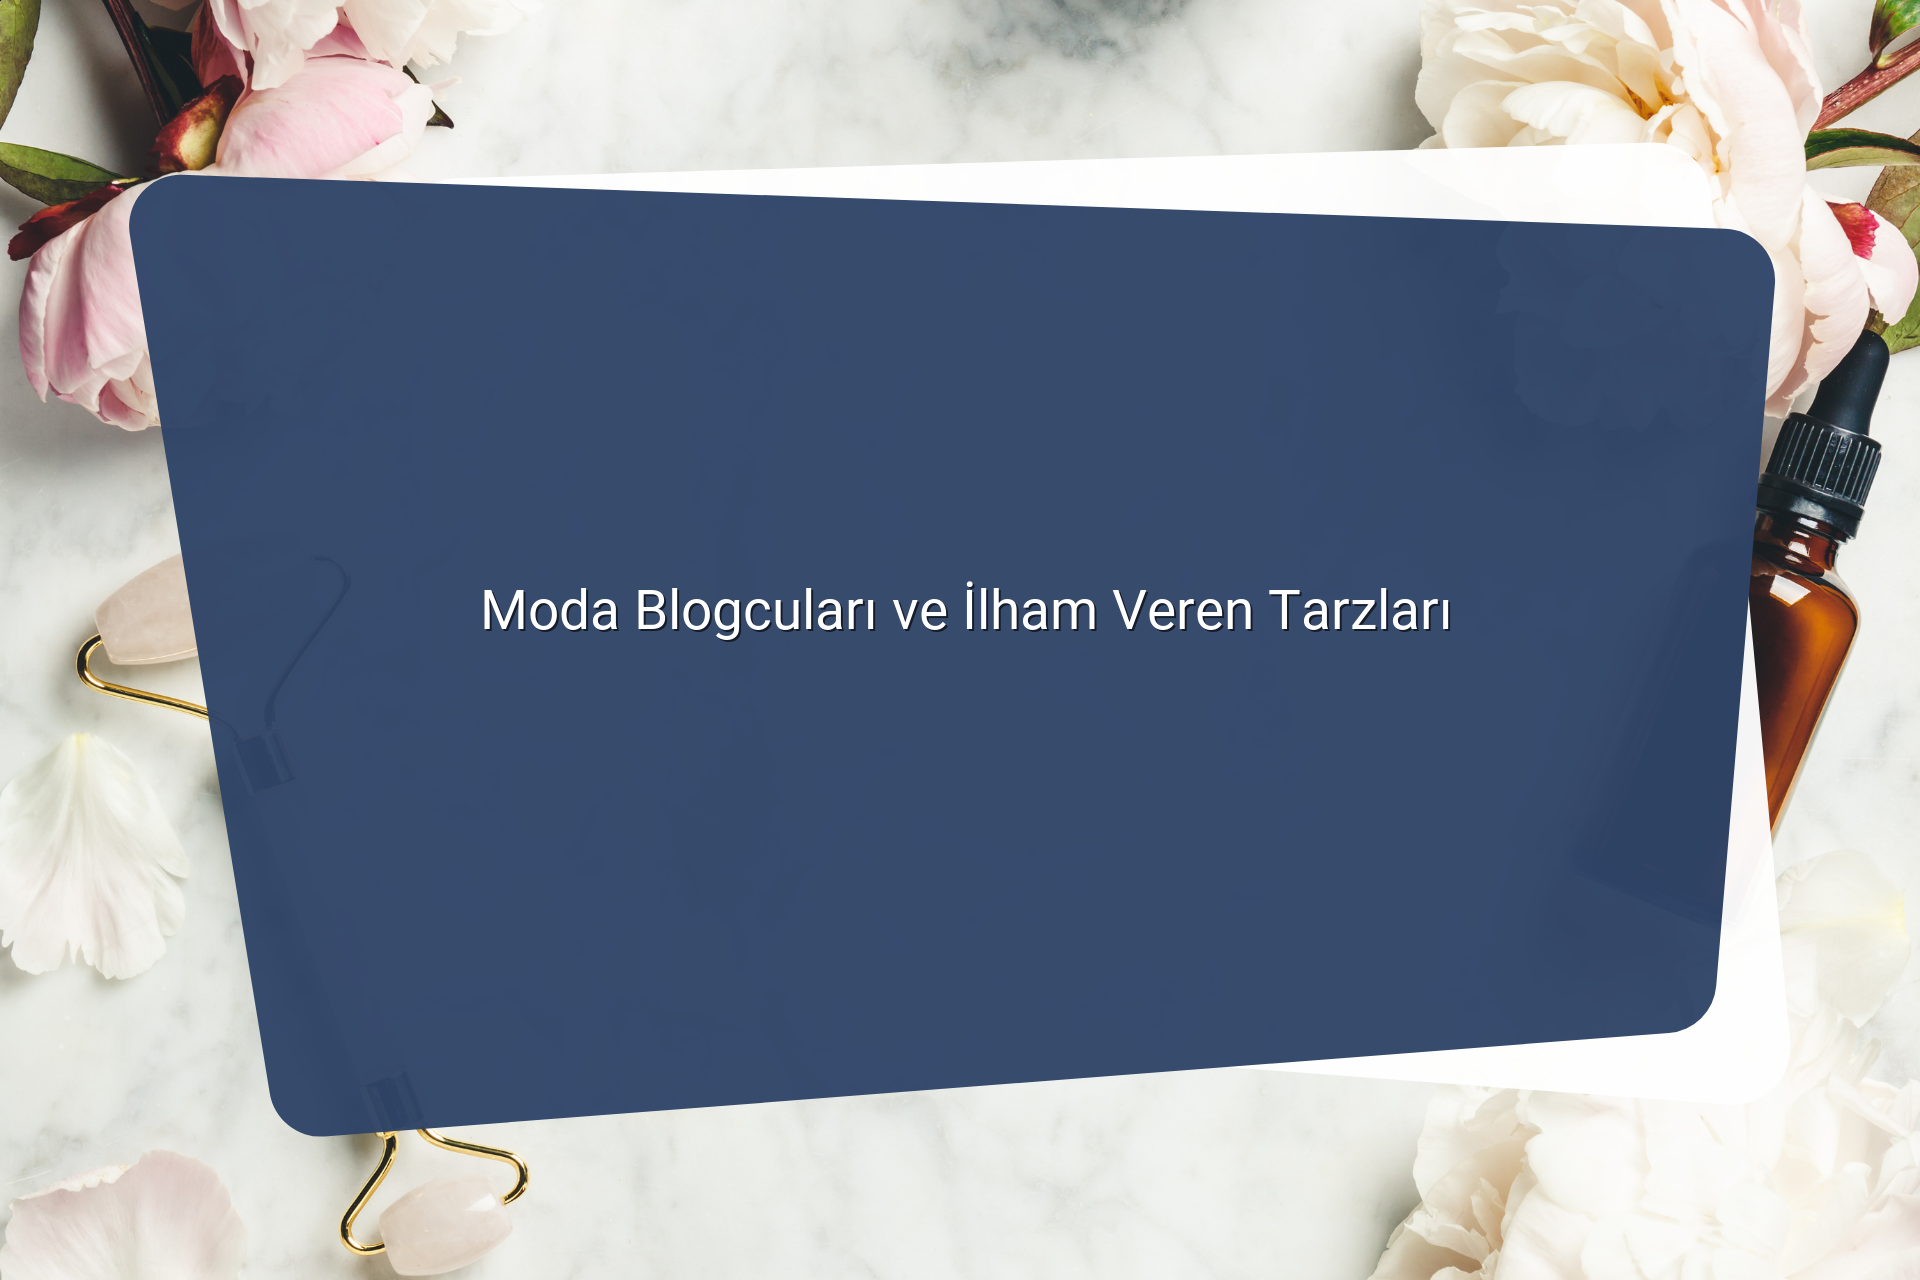 Moda Blogculari ve Ilham Veren Tarzlari